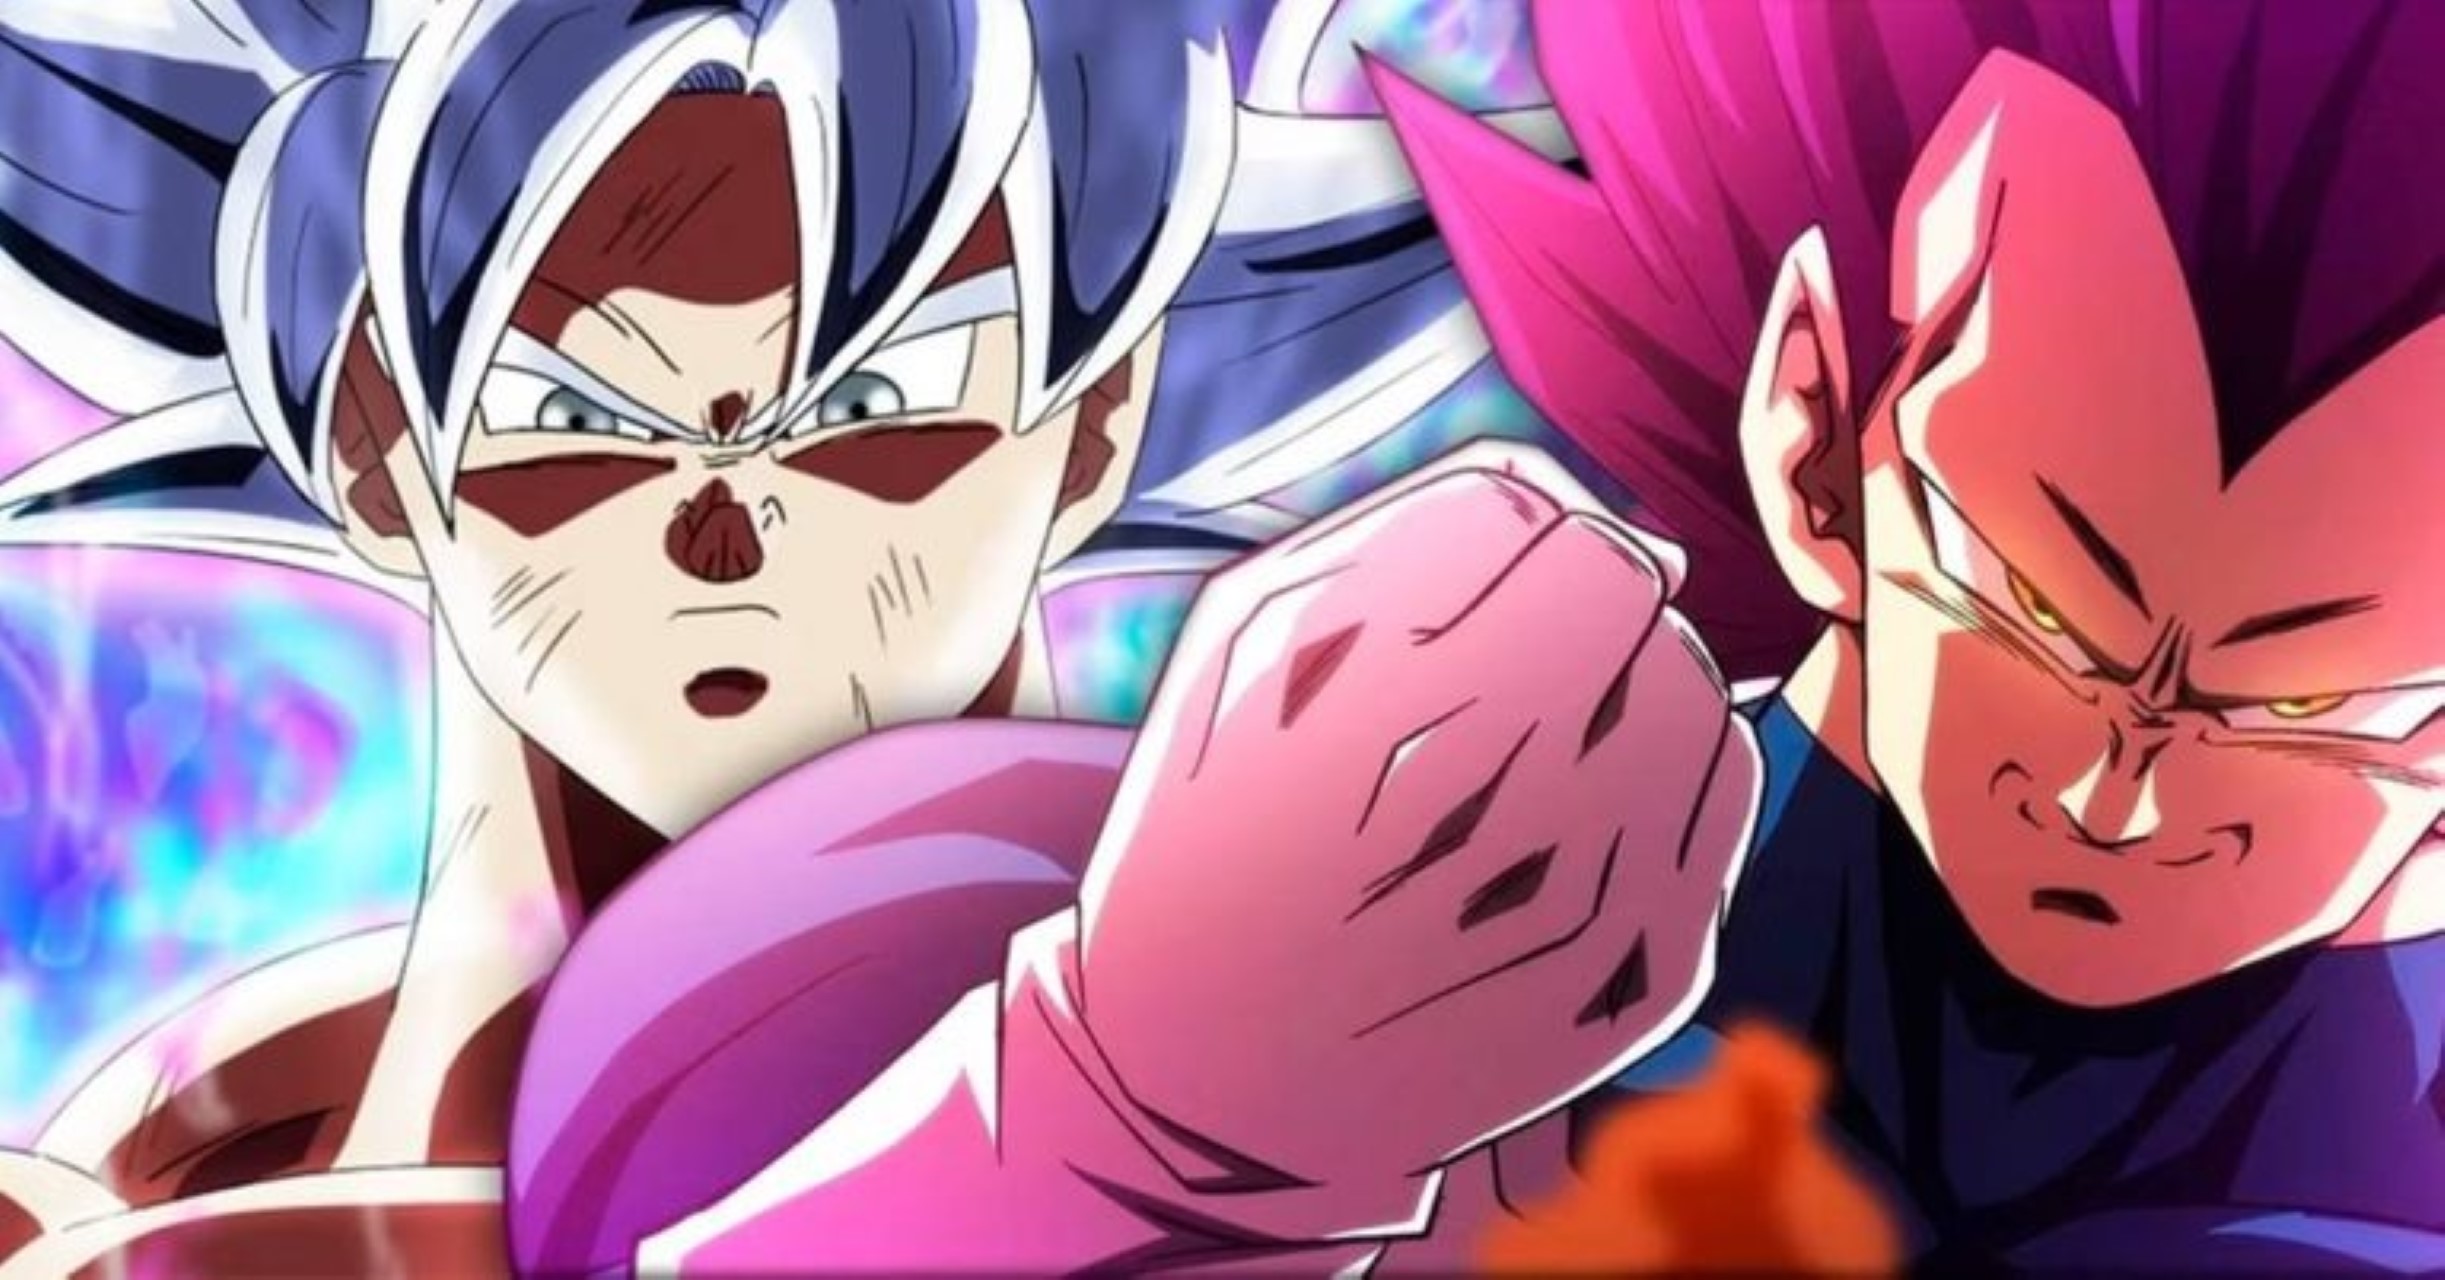 Dragon Ball Z: Goku não teria alcançado o Super Saiyajin 3 se não